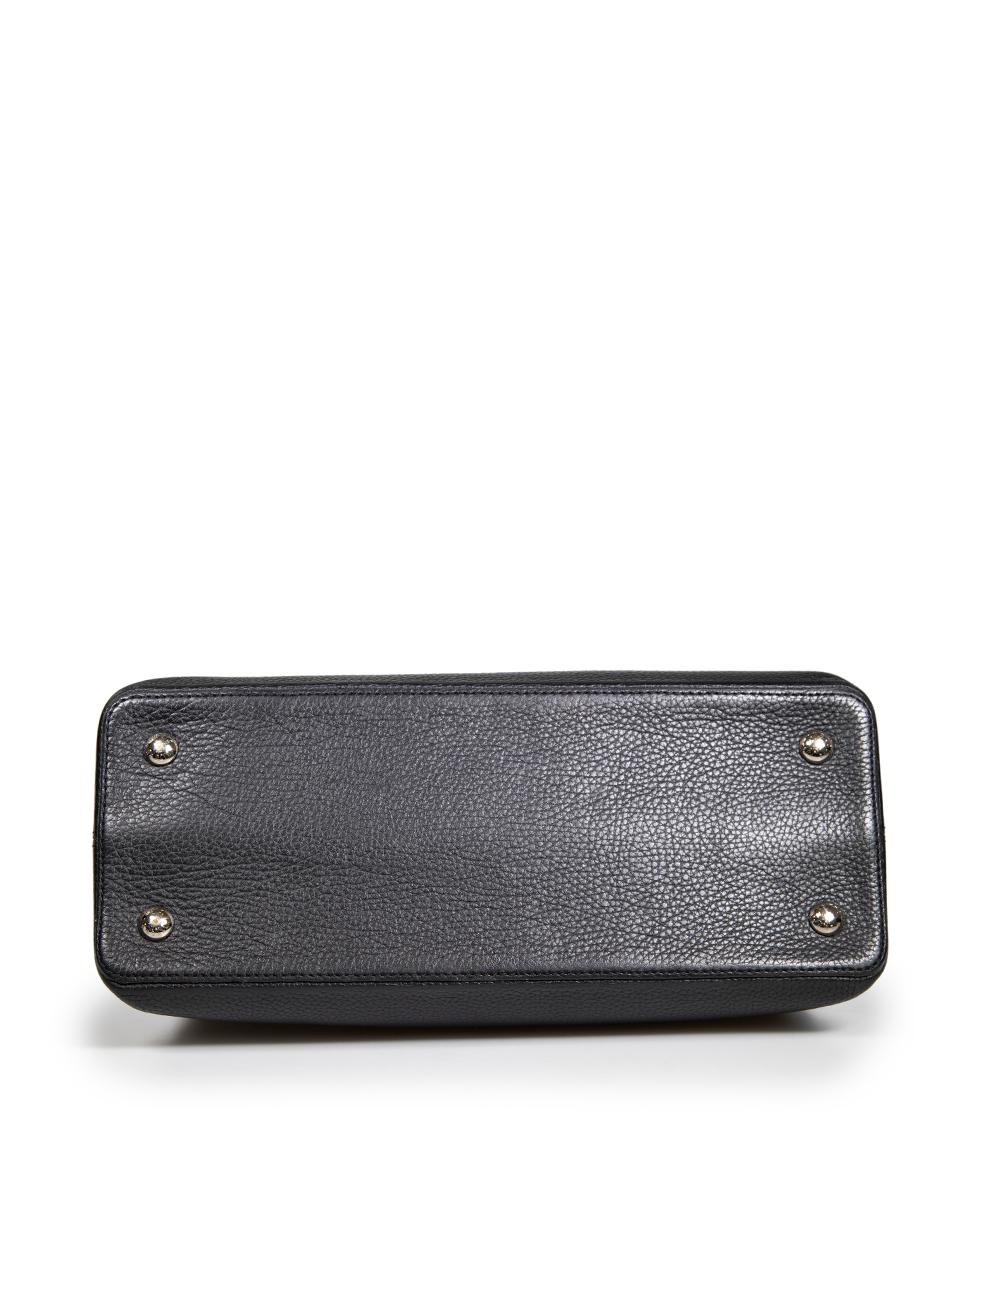 Women's Louis Vuitton 2014 Black Leather Taurillon Python Capucines MM For Sale